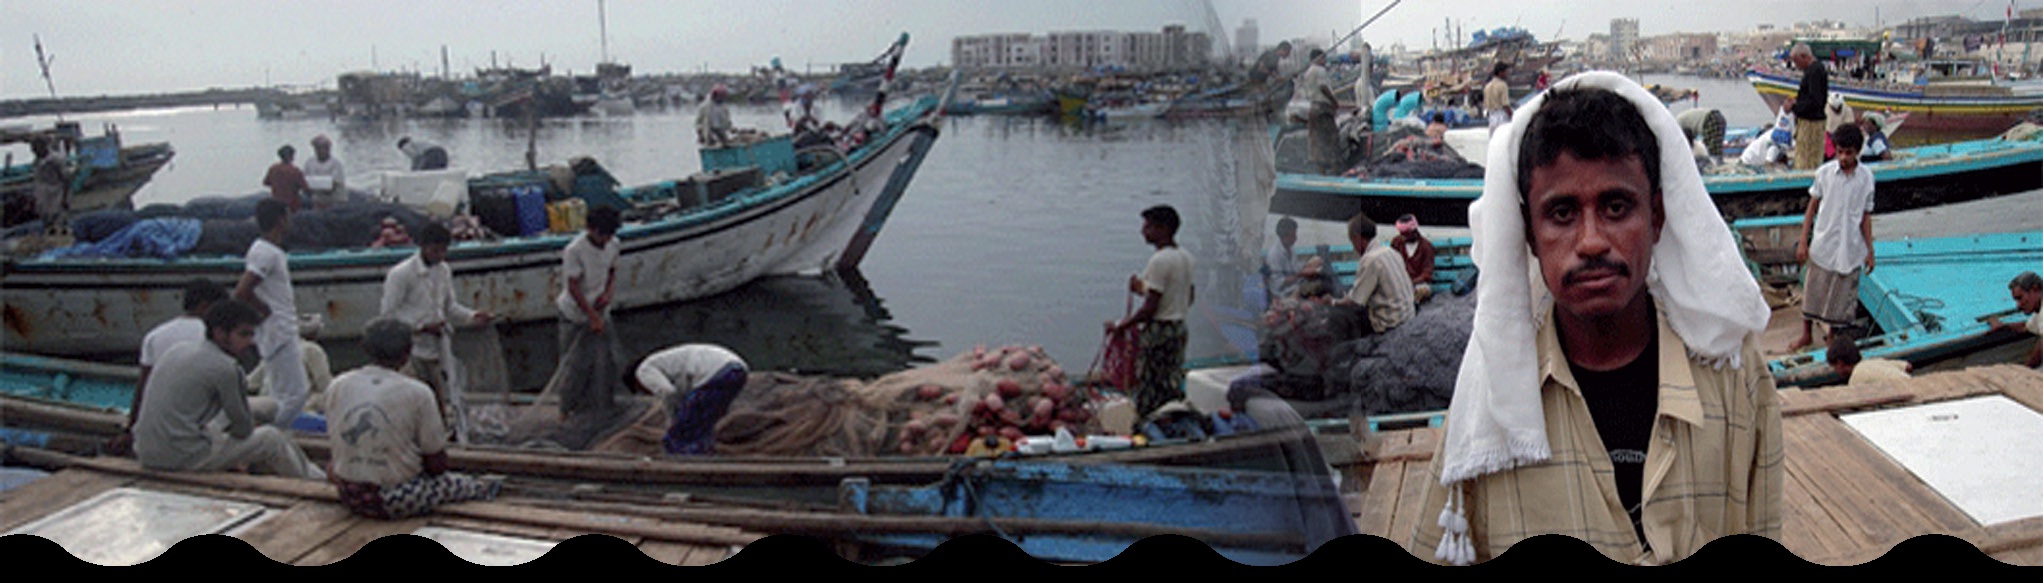 اتفاقية تستنزف الثروة السمكية والصيادون يطالبون بإلغائها